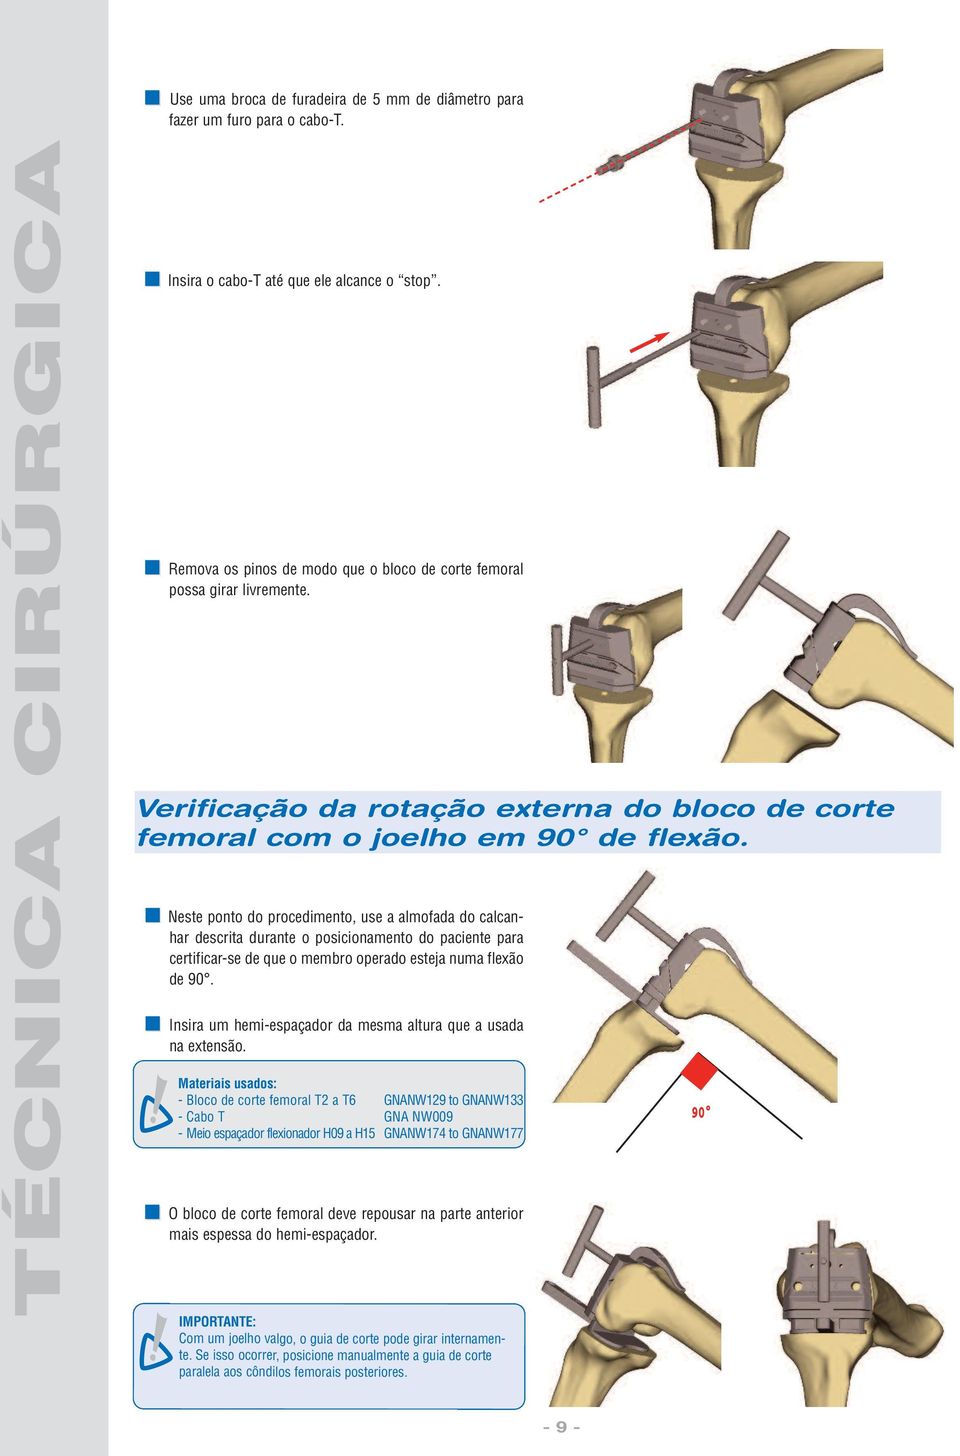 Neste ponto do procedimento, use a almofada do calcanhar descrita durante o posicionamento do paciente para certificar-se de que o membro operado esteja numa flexão de 90.